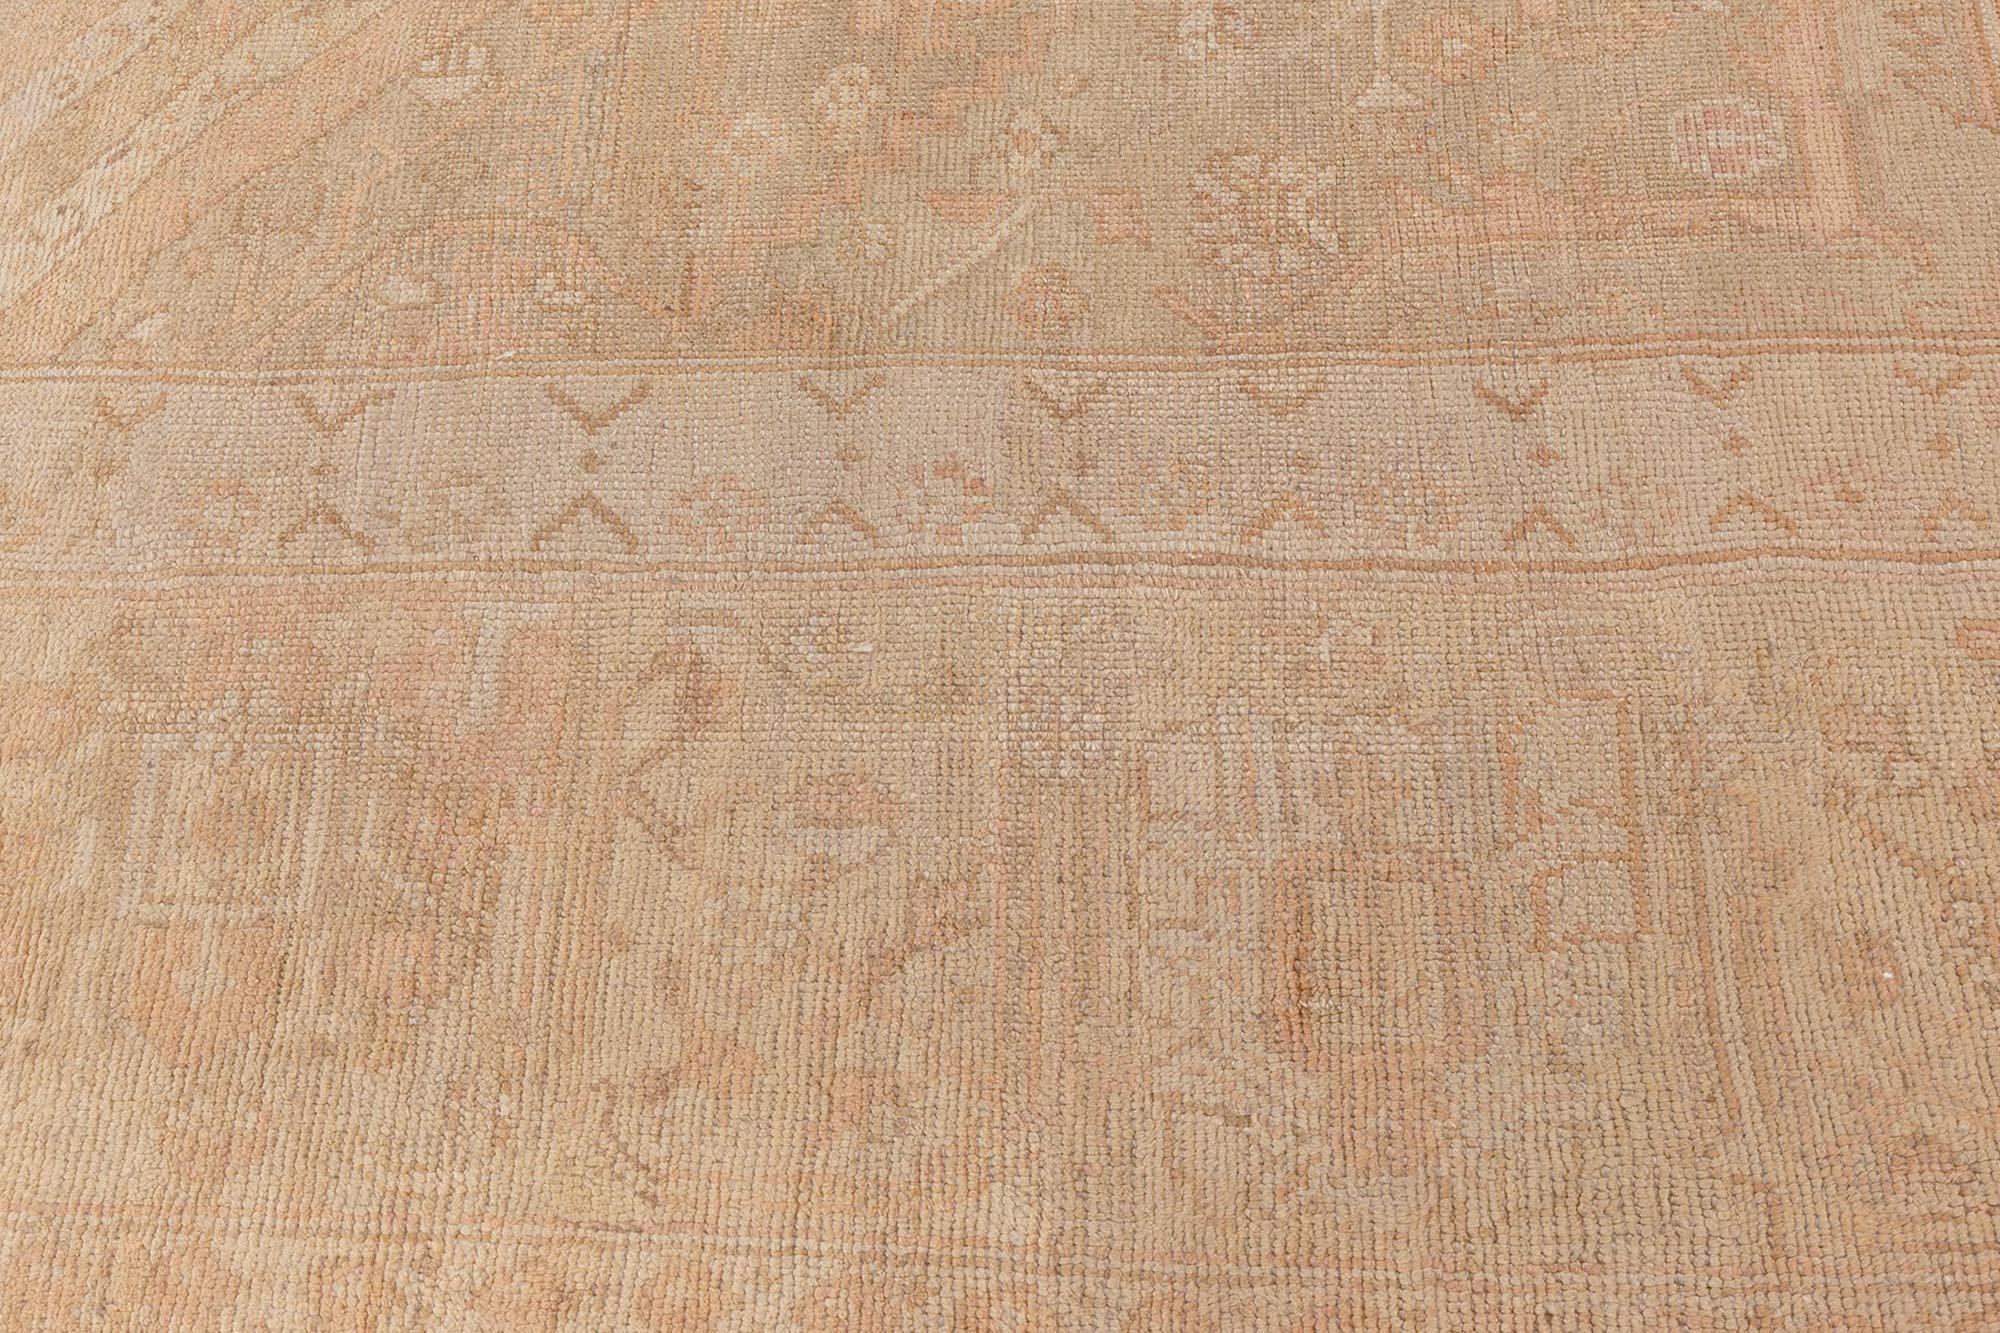 Authentischer türkischer Oushak-Teppich aus Wolle aus dem 19.
Größe: 12'6